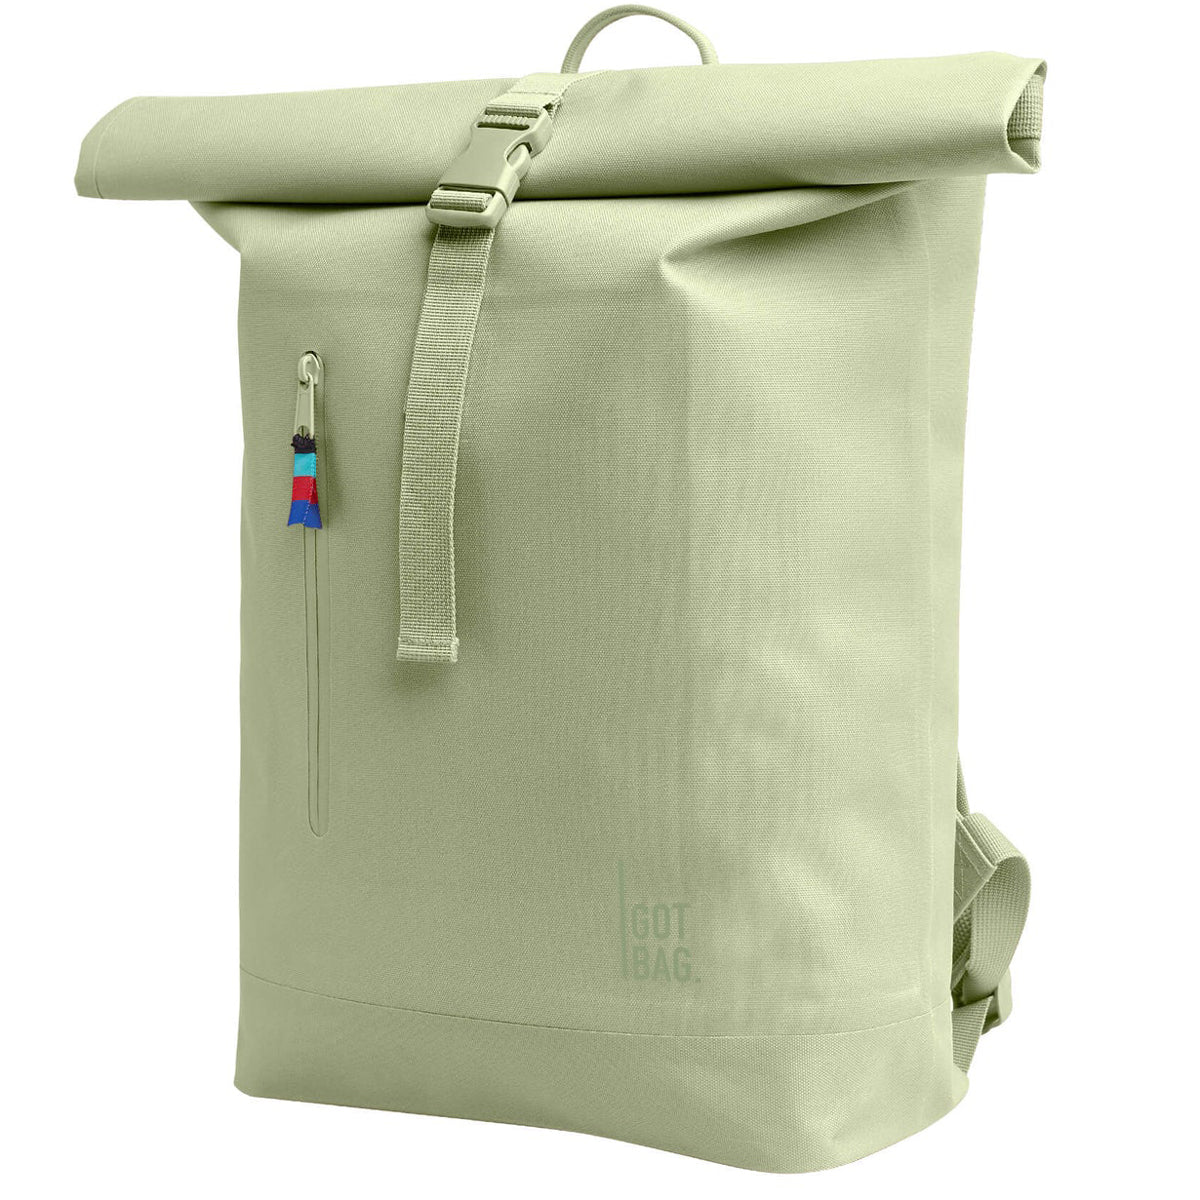 Got Bag Rolltop Lite Backpack - Bonefish image 3